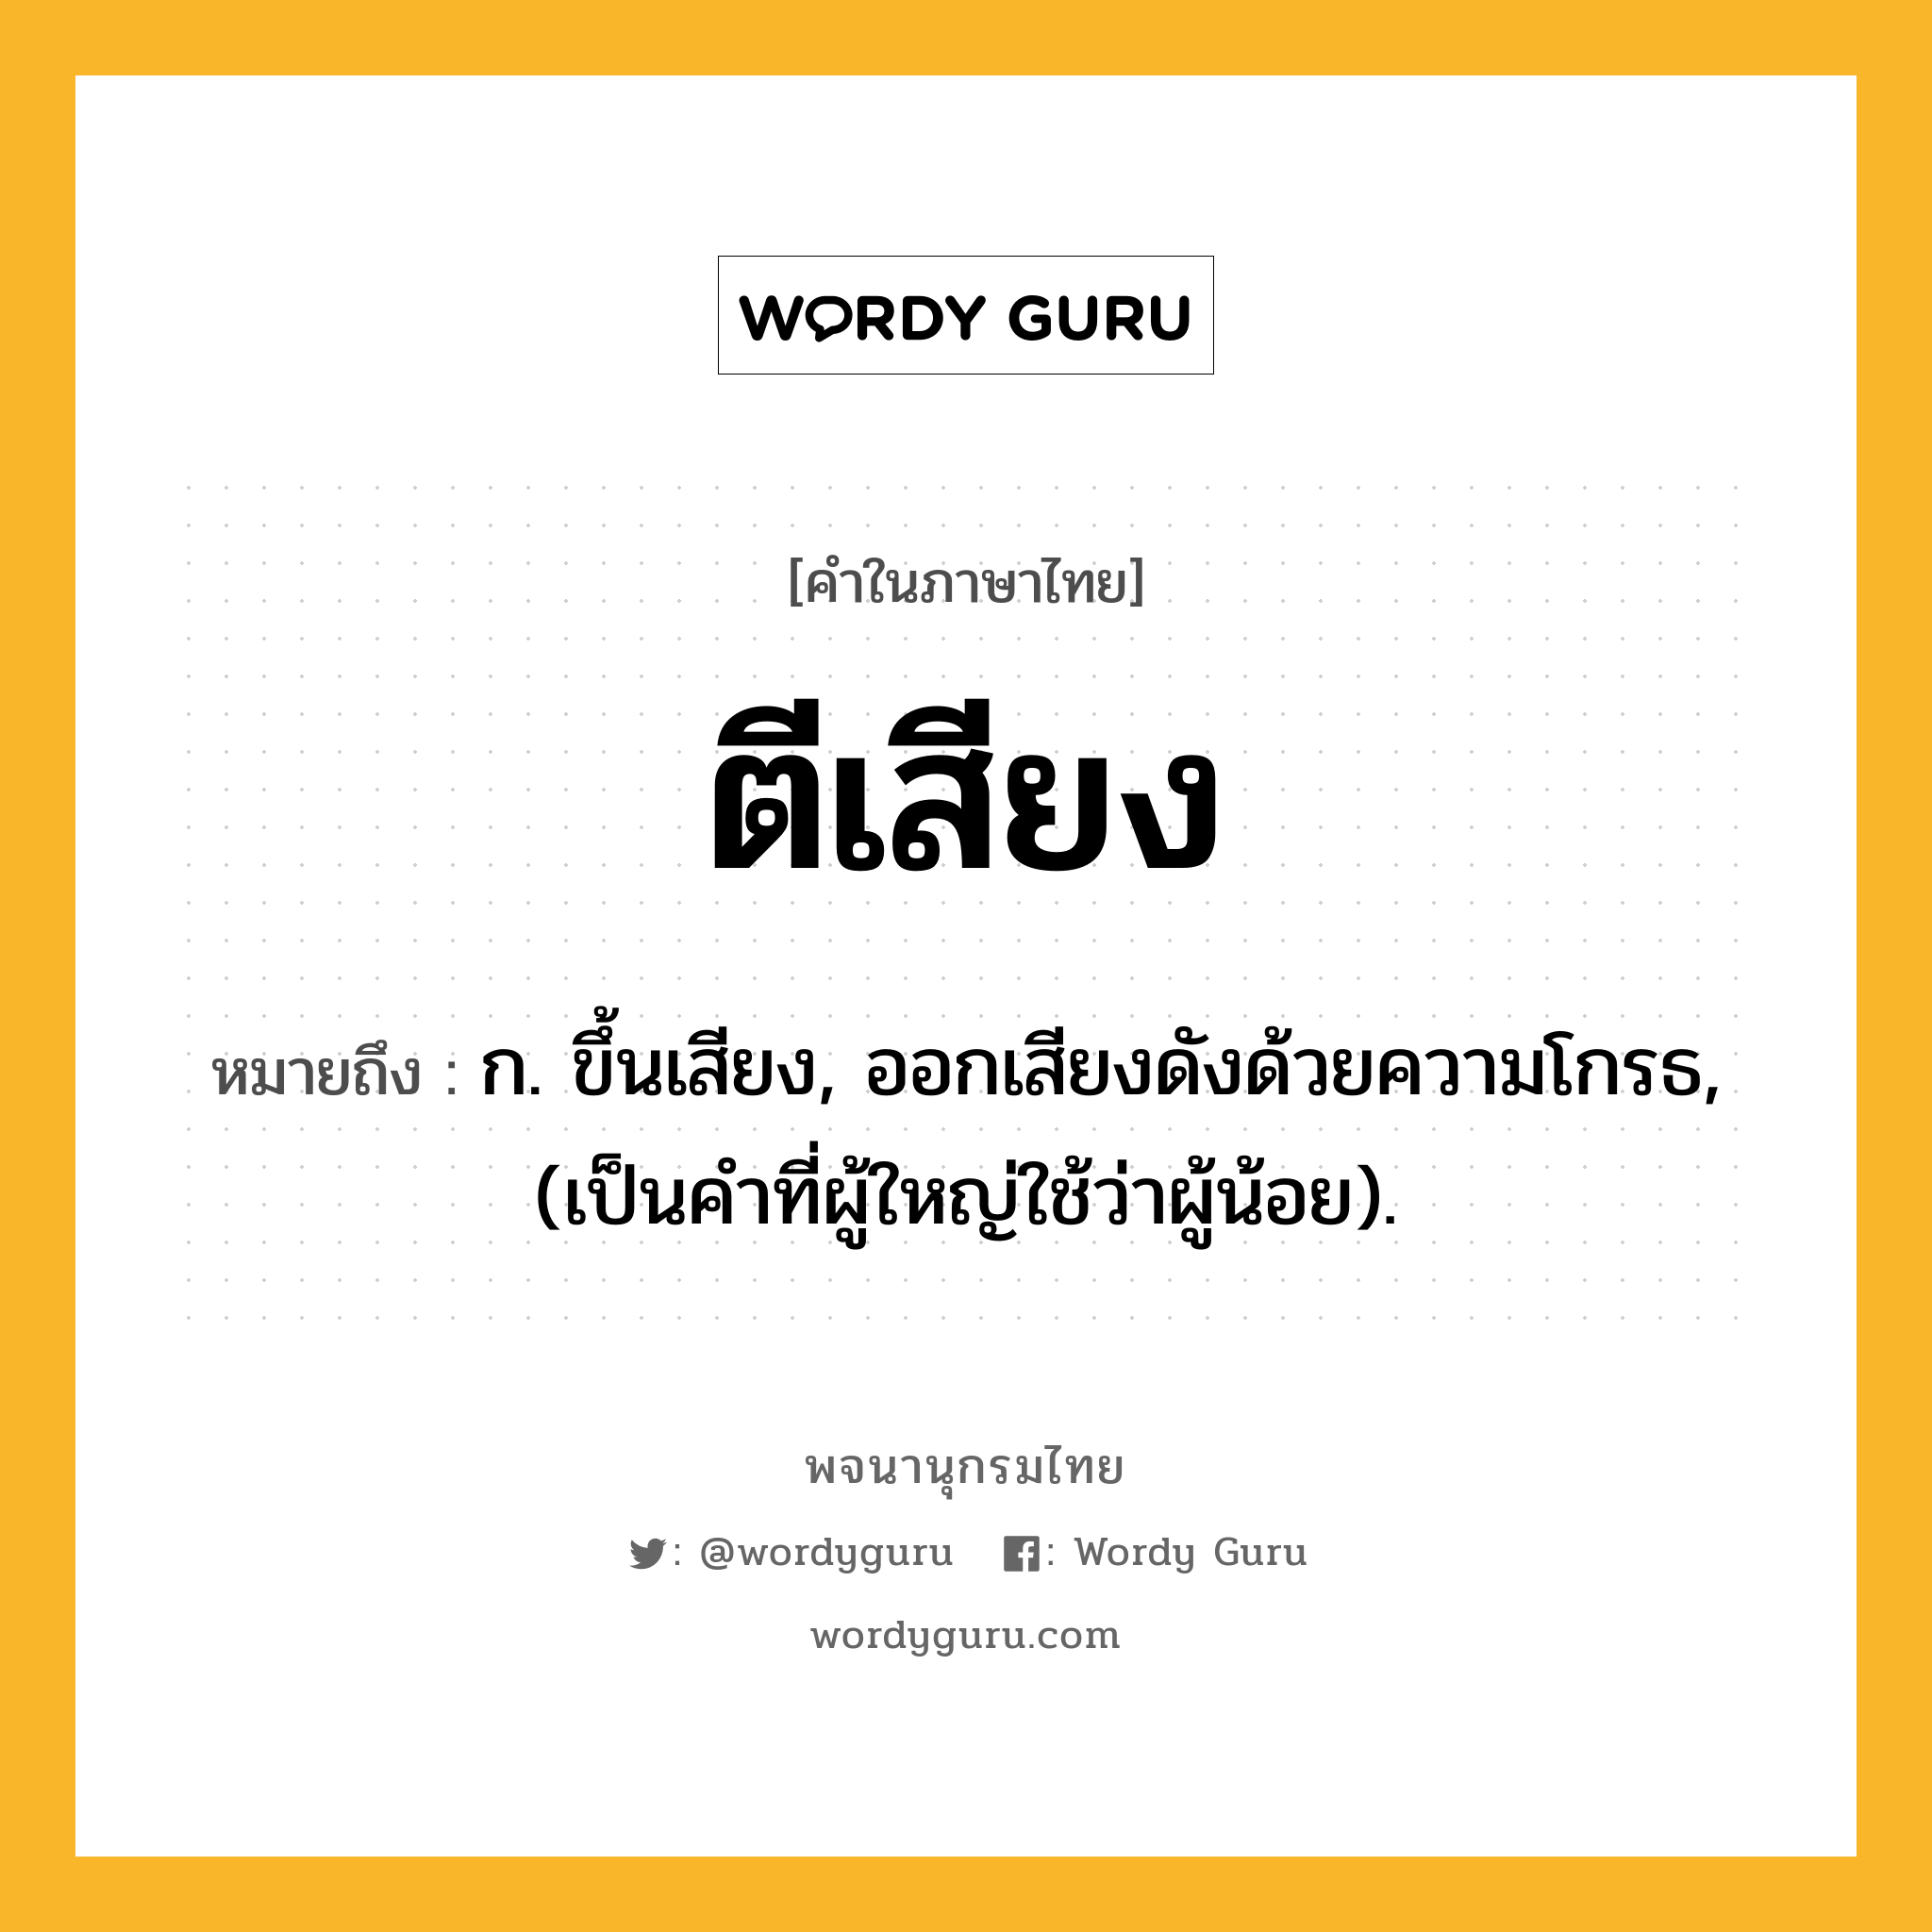 ตีเสียง ความหมาย หมายถึงอะไร?, คำในภาษาไทย ตีเสียง หมายถึง ก. ขึ้นเสียง, ออกเสียงดังด้วยความโกรธ, (เป็นคําที่ผู้ใหญ่ใช้ว่าผู้น้อย).